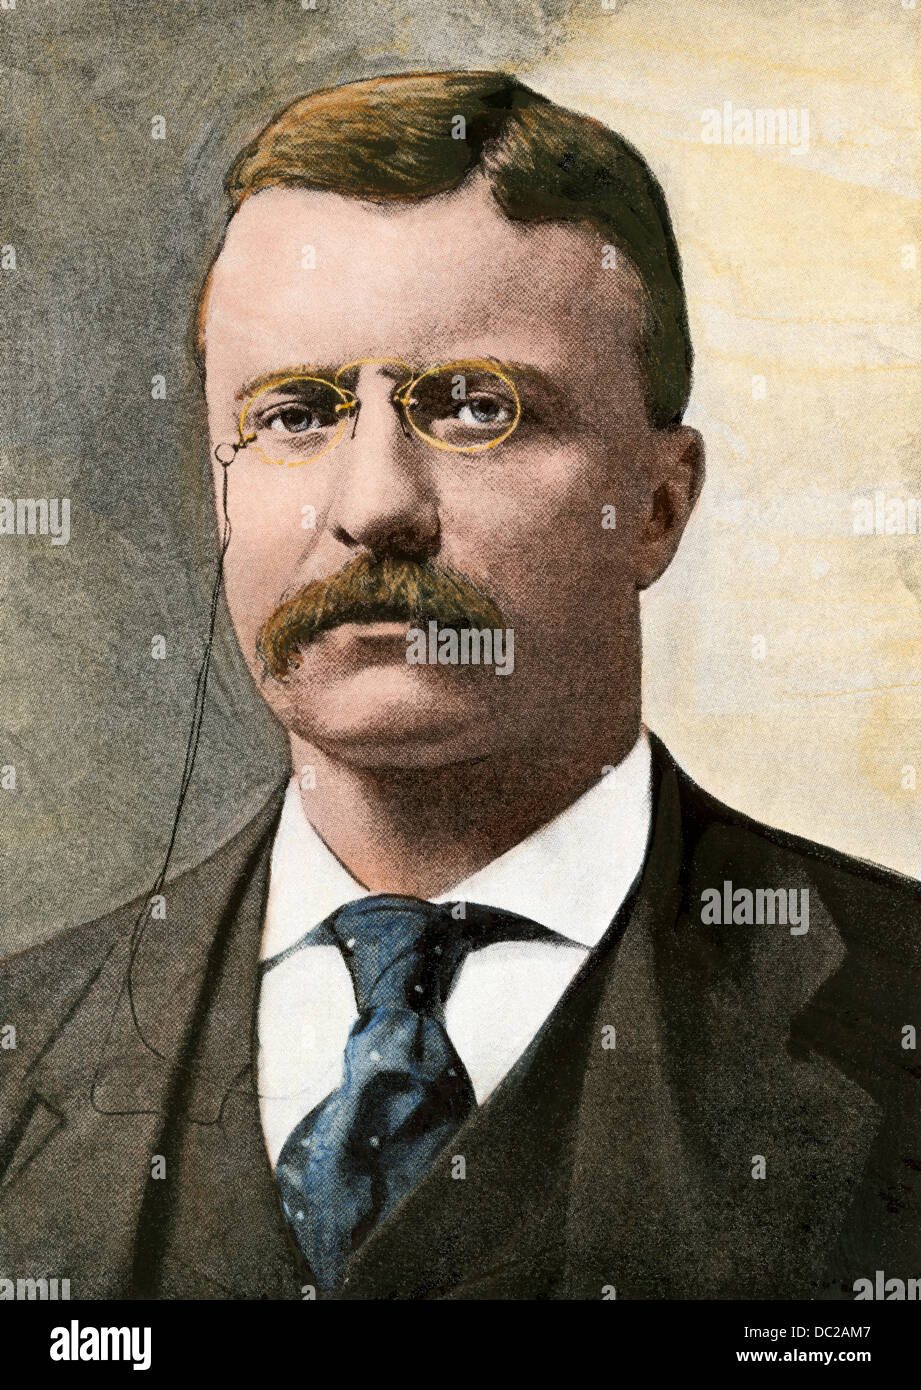 US-Präsident Theodore Roosevelt. Handcolorierte halftone Wiedergabe einer Fotografie Stockfoto